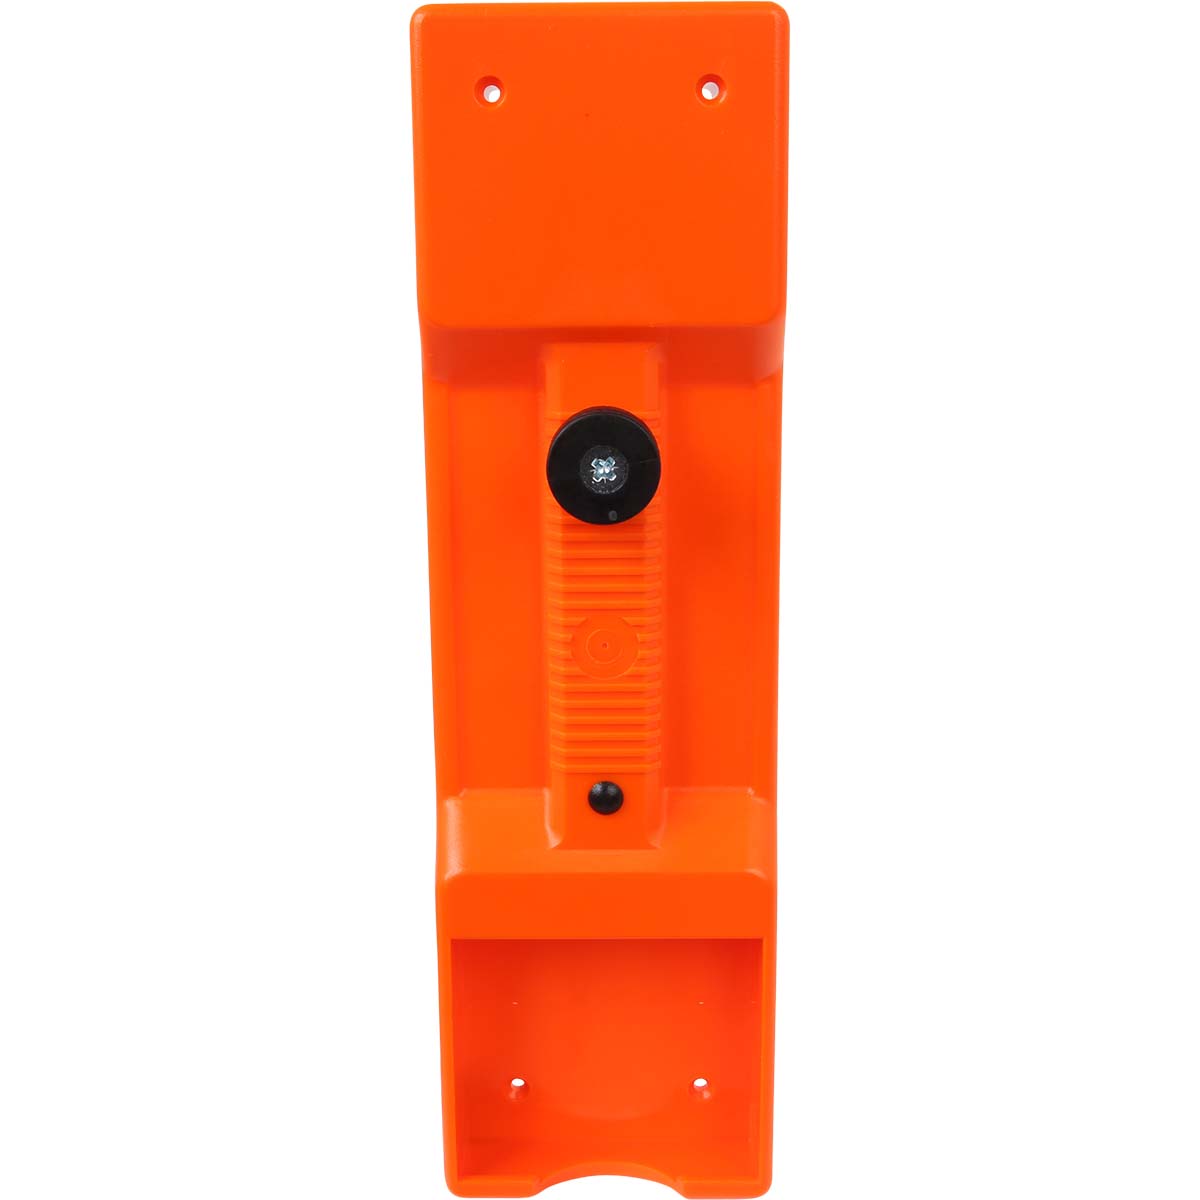 Sendergehäuse Unterteil, micron 5 UT, orange,